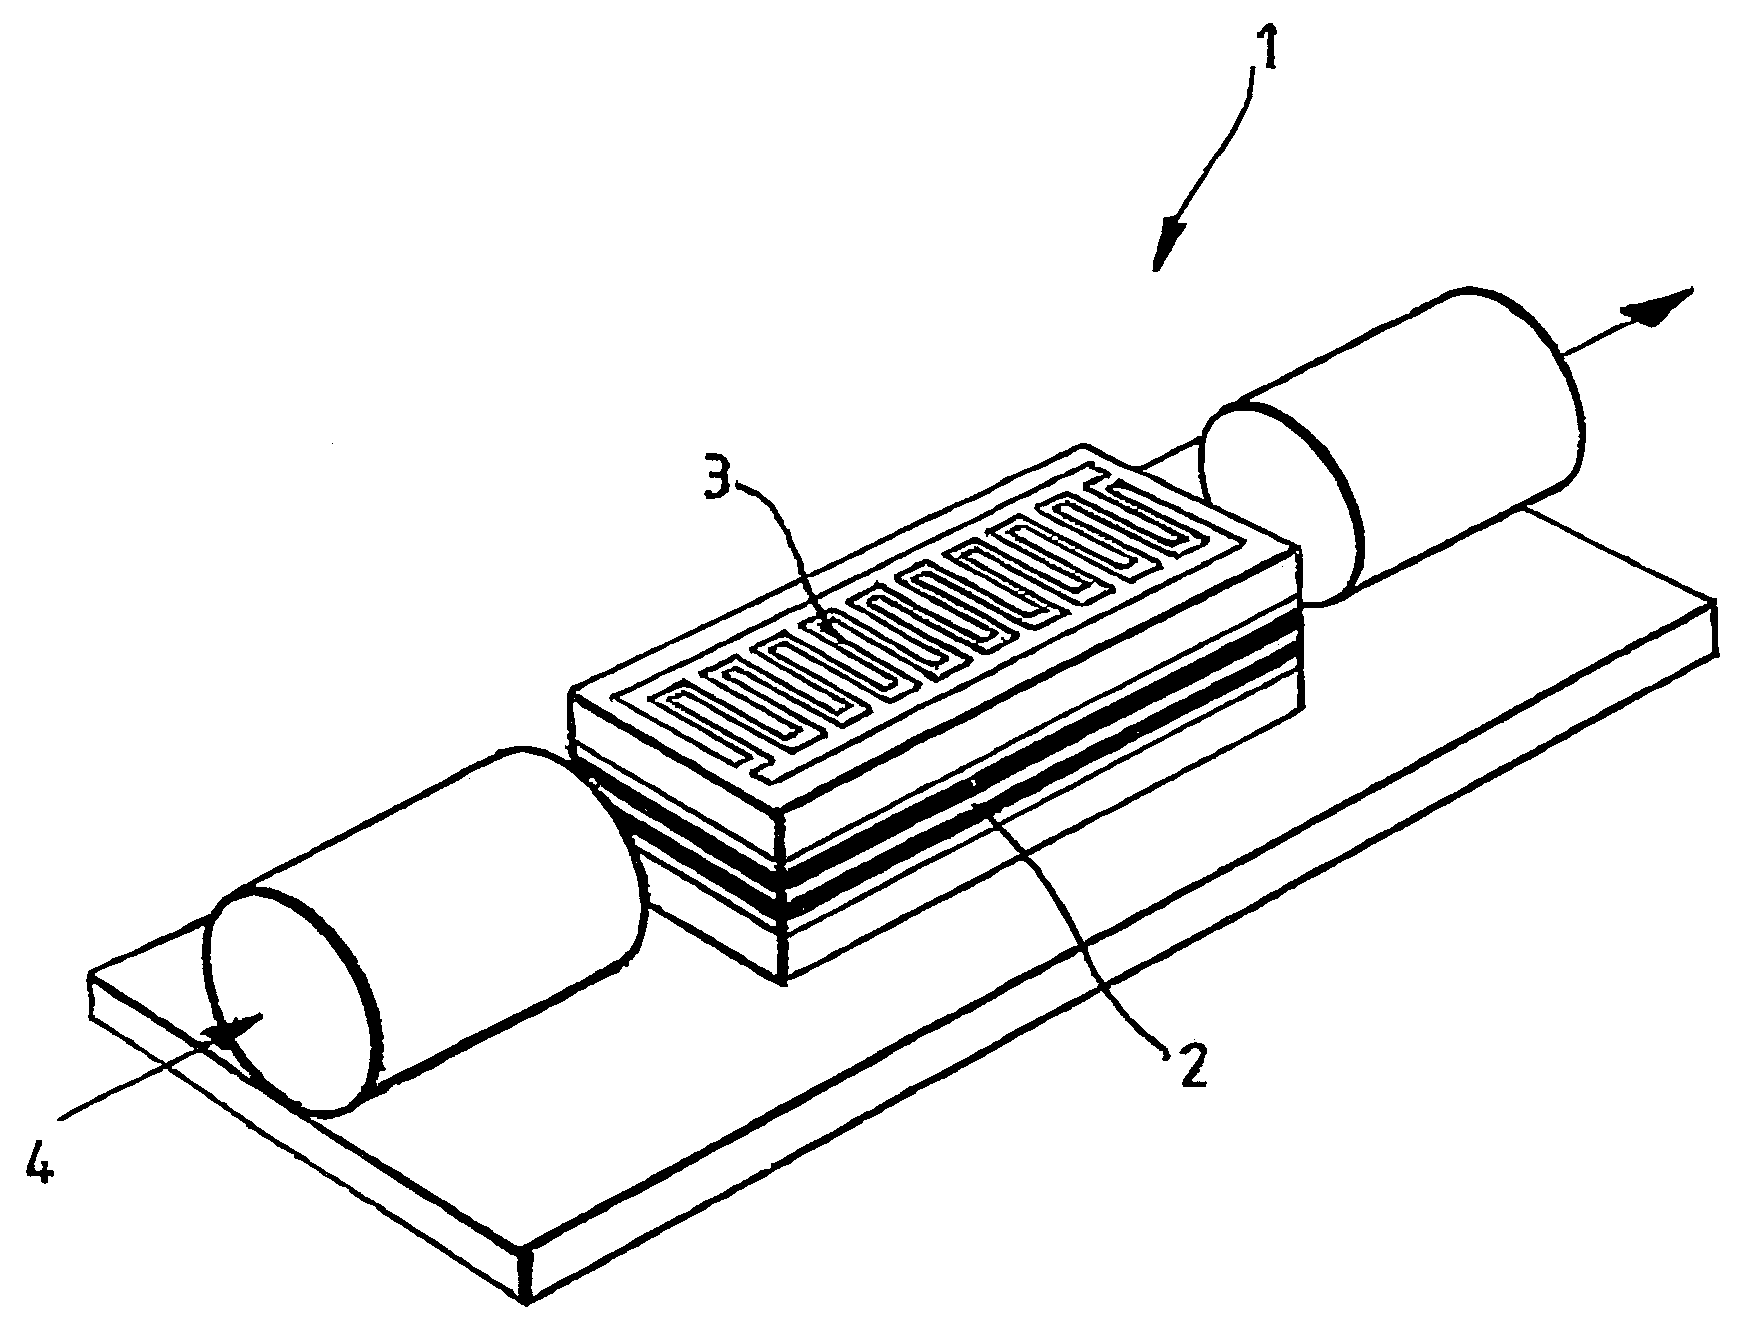 Acousto-optical device based on phonon-induced polaritonic band gaps